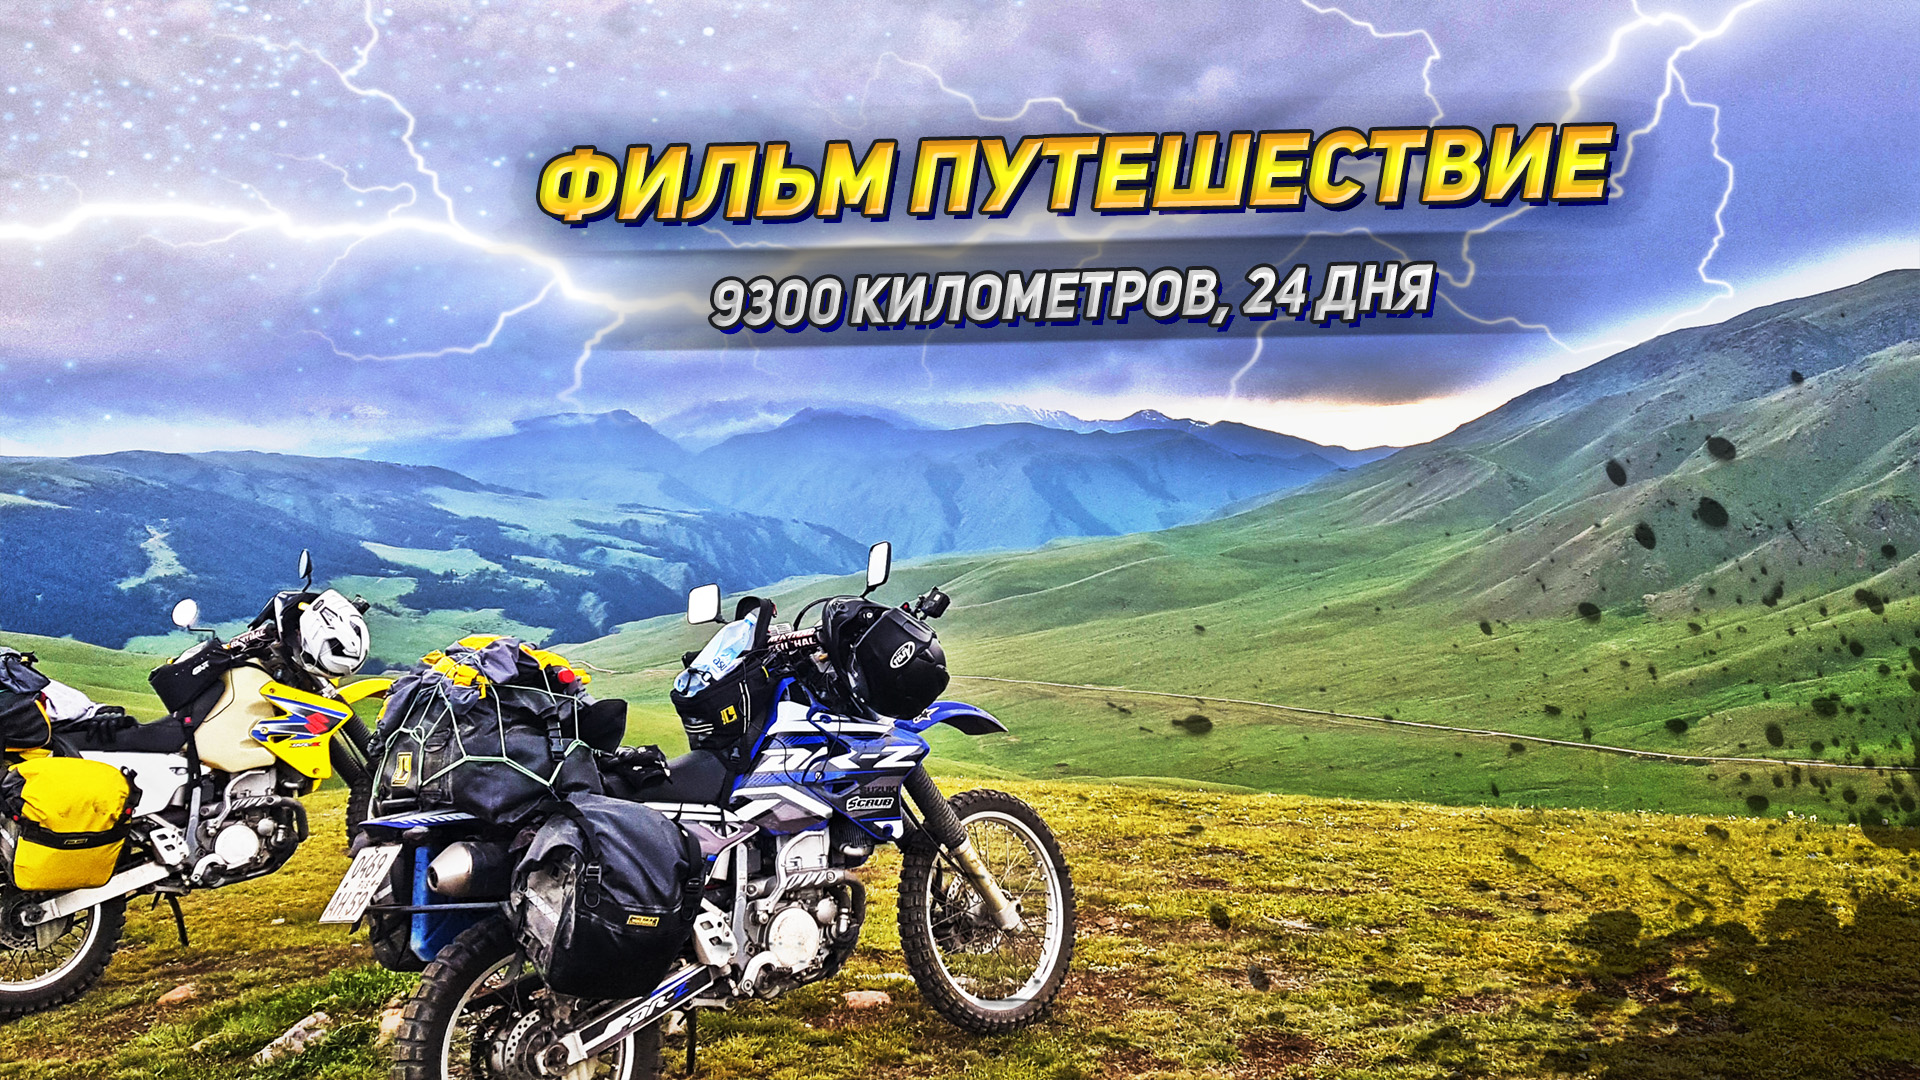 9300 километров, 24 дня. Большое путешествие в Казахстан и Алтай